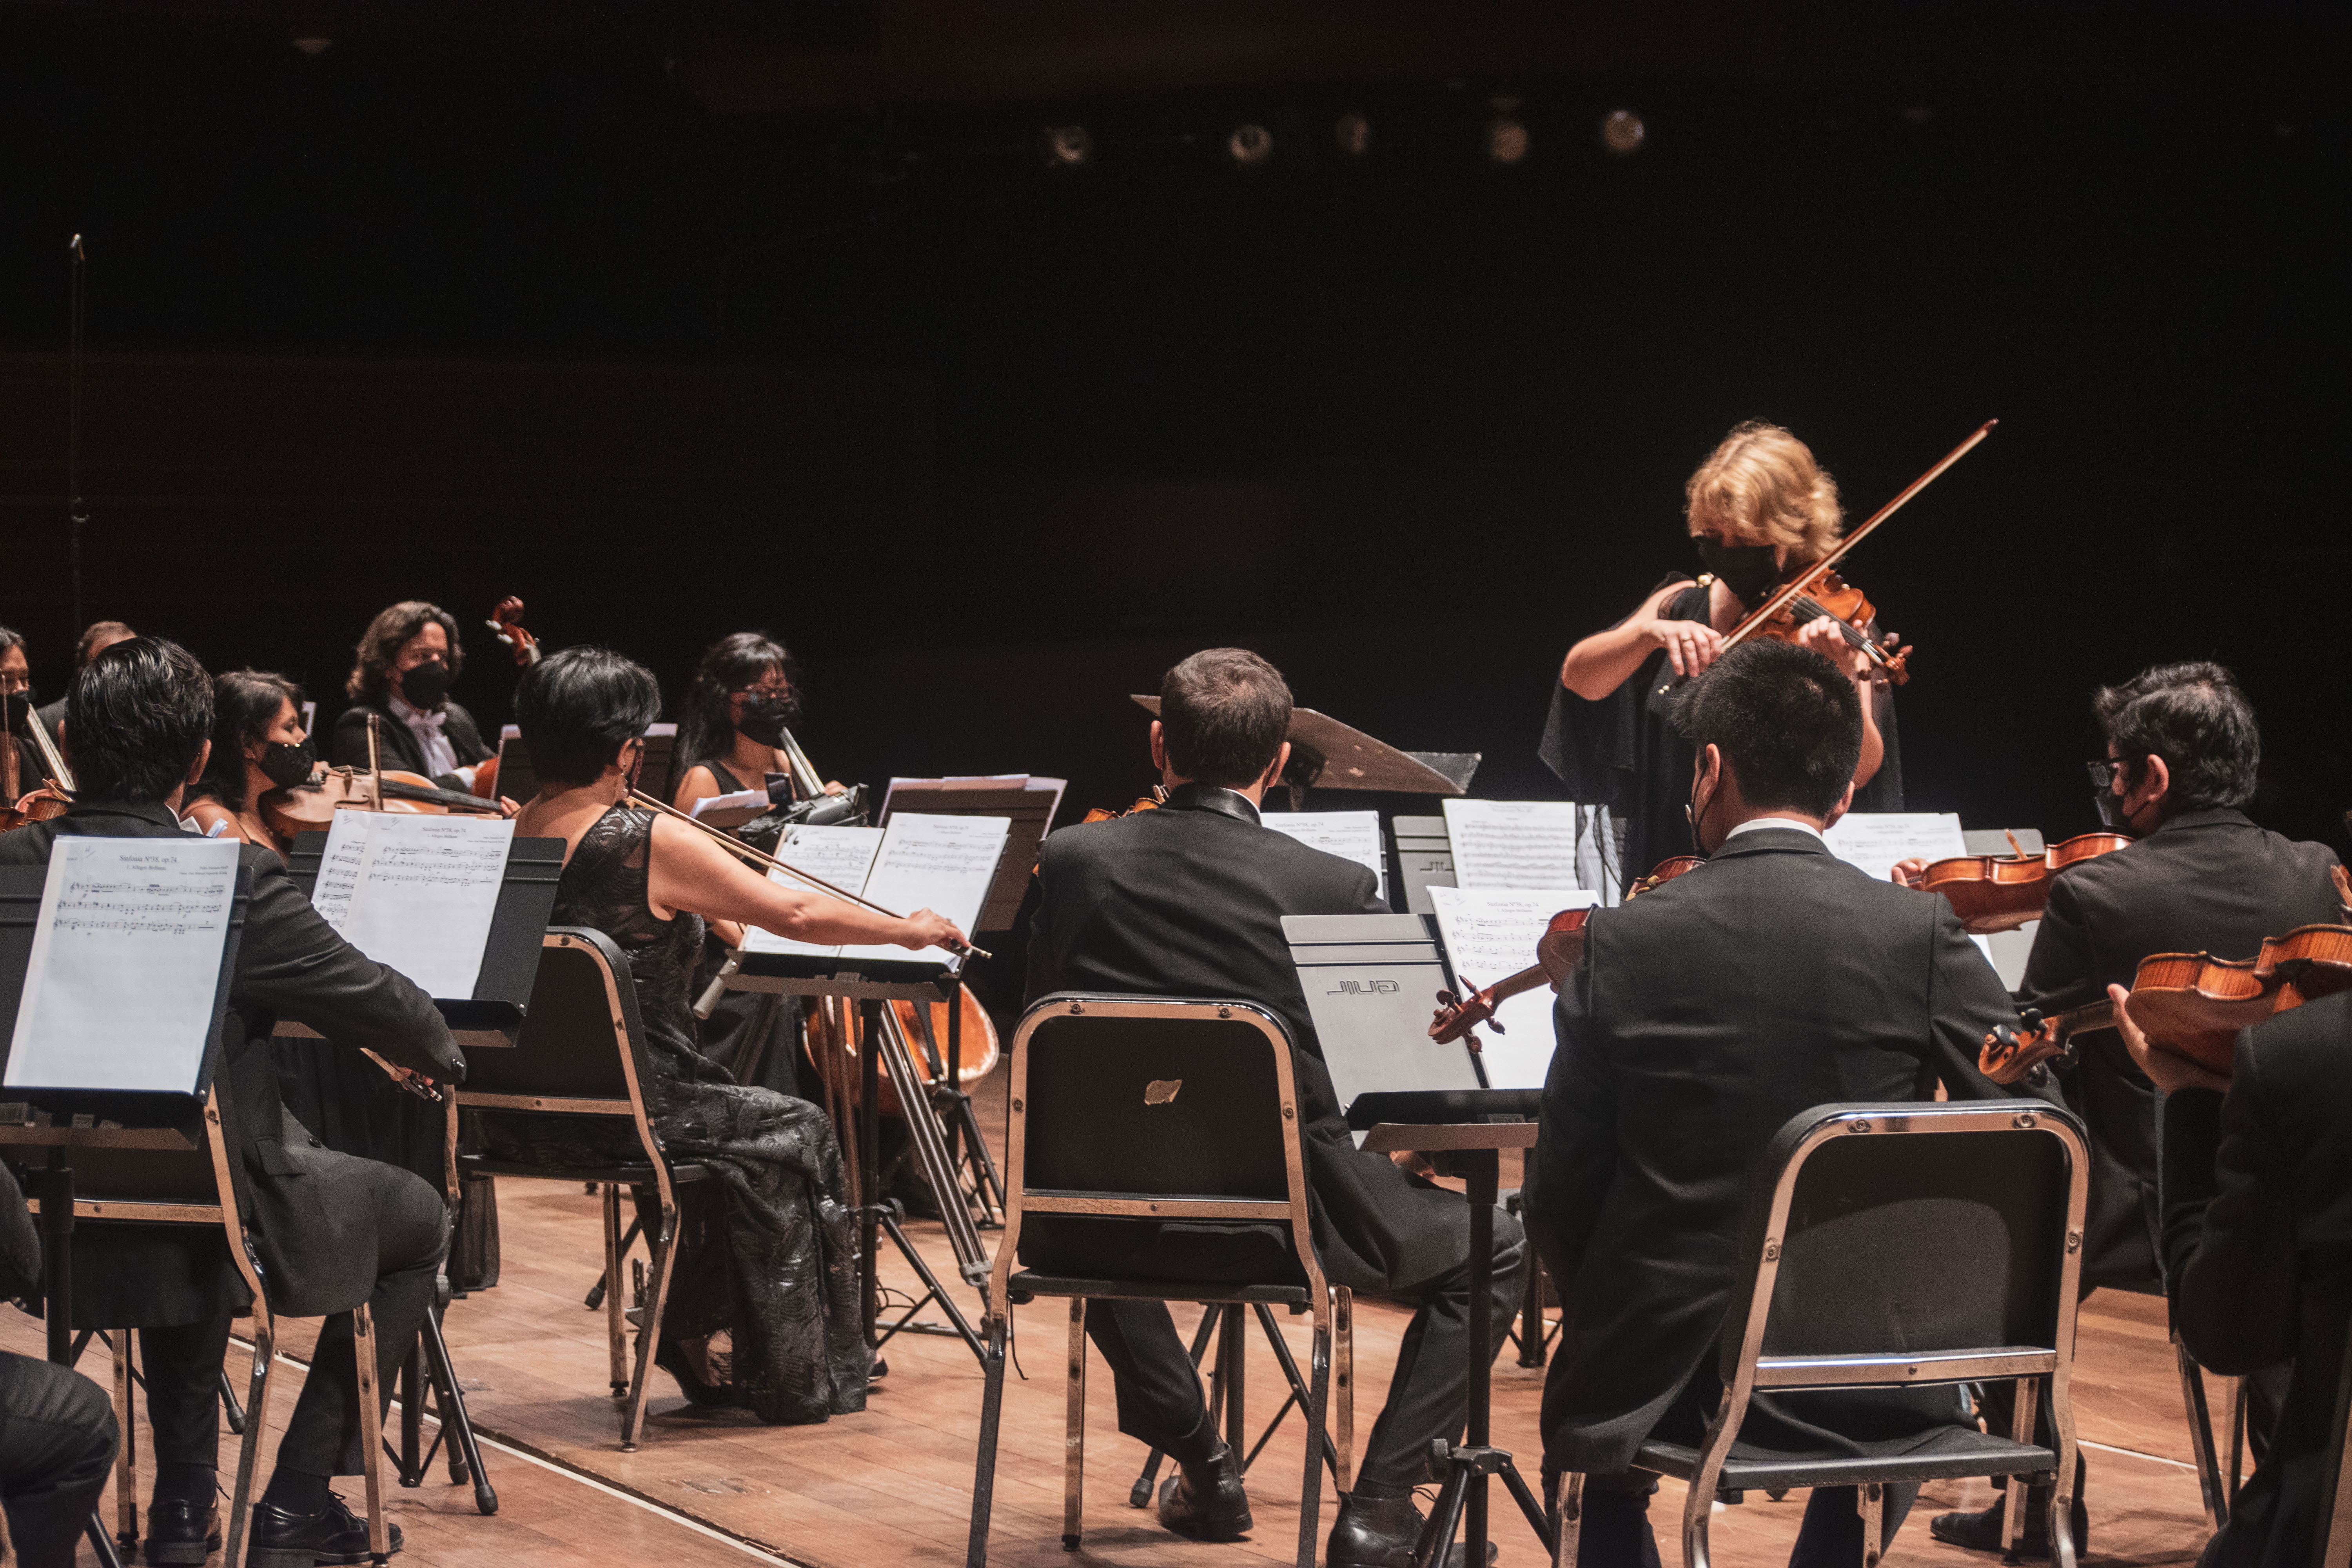 La Orquesta Sinfónica Nacional y el Coro Nacional del Perú presentan el concierto por Semana Santa "Maestros peruanos de la música sacra"